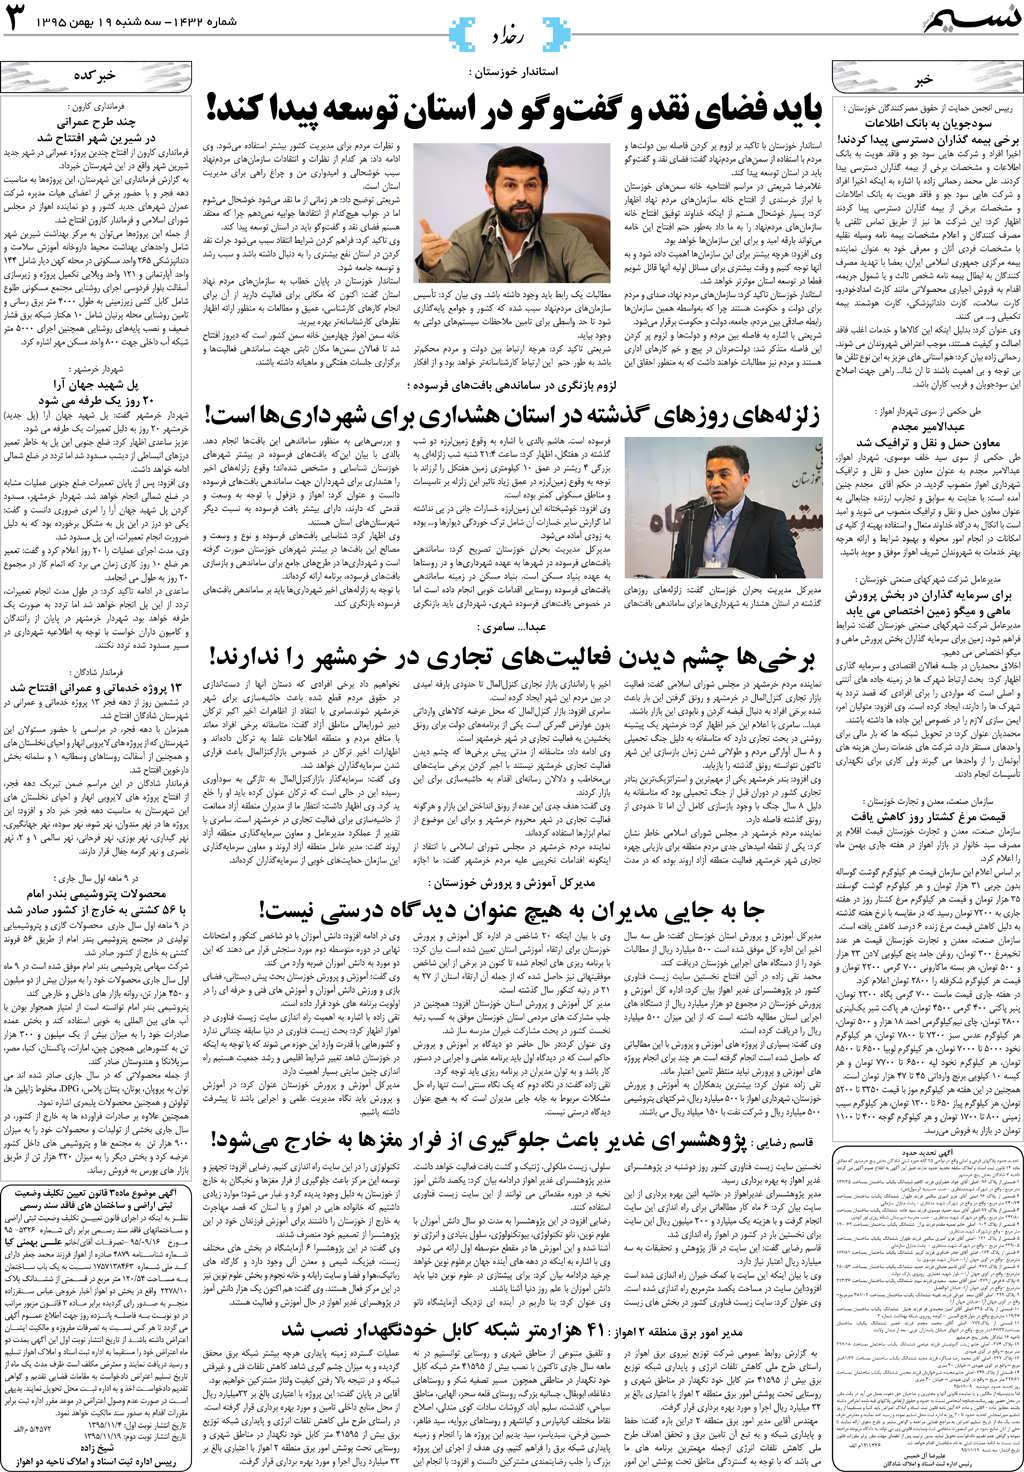 صفحه رخداد روزنامه نسیم شماره 1432